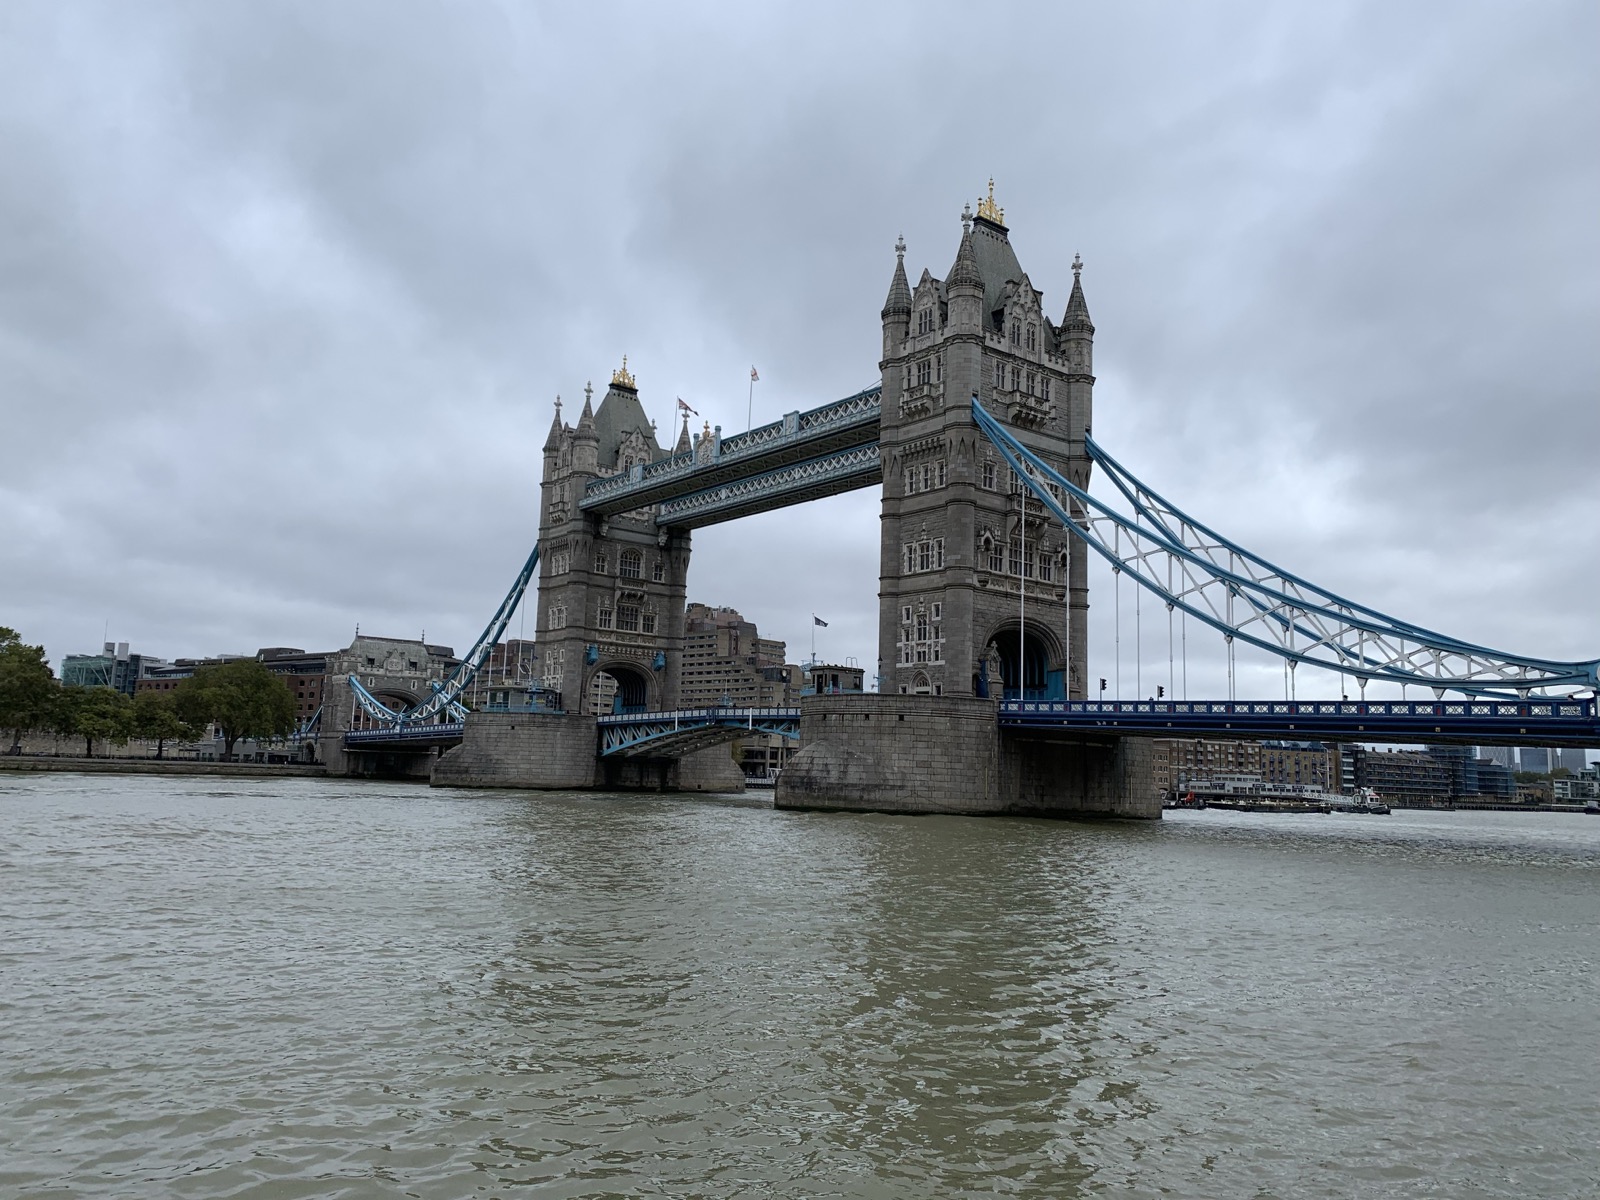 Cosa vedere a Londra in 4 giorni - Guida e Itinerario